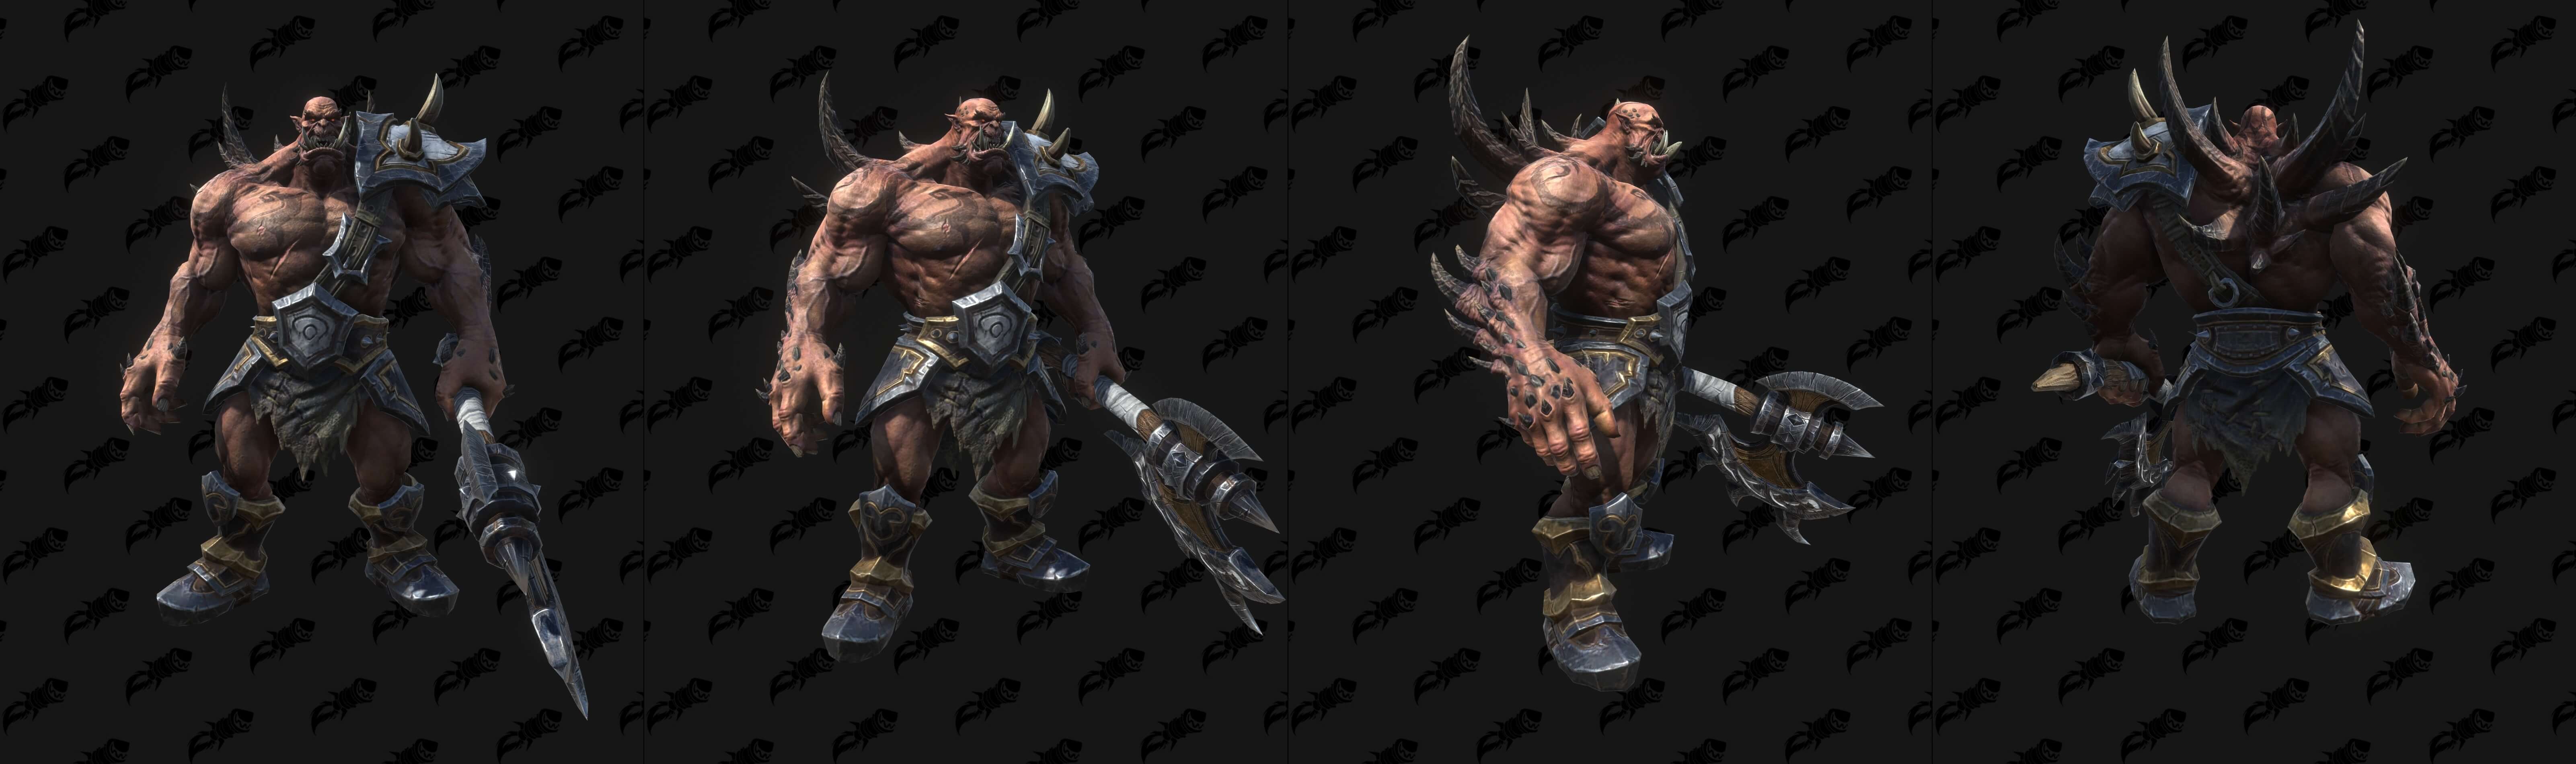 Моделі демонів та пов'язаних з ними юнітів з Warcraft III: Reforged